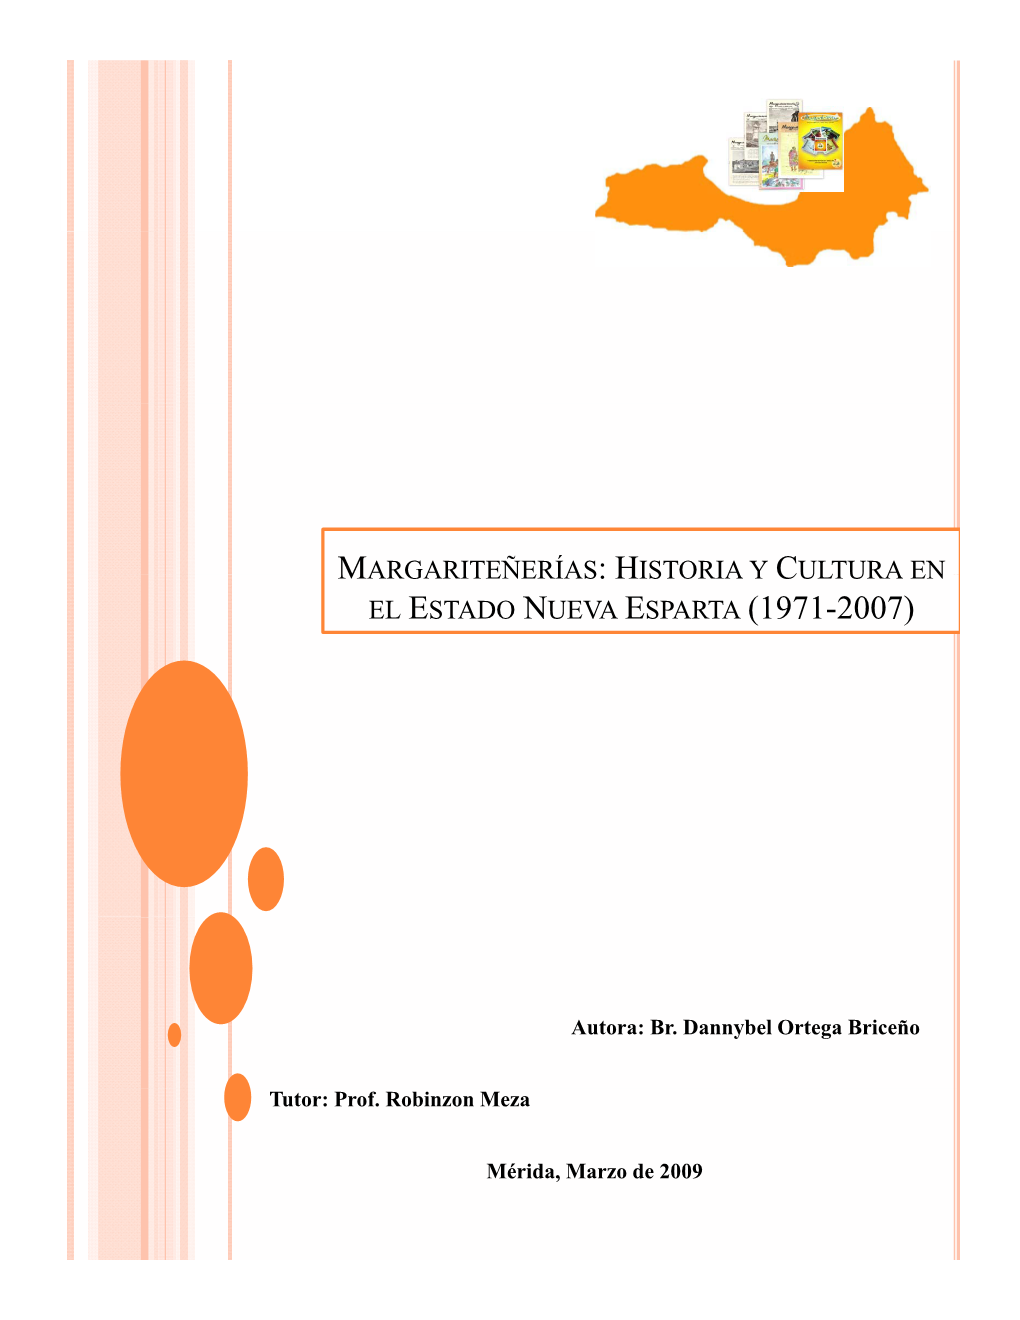 El Estado Nueva Esparta (1971-2007)